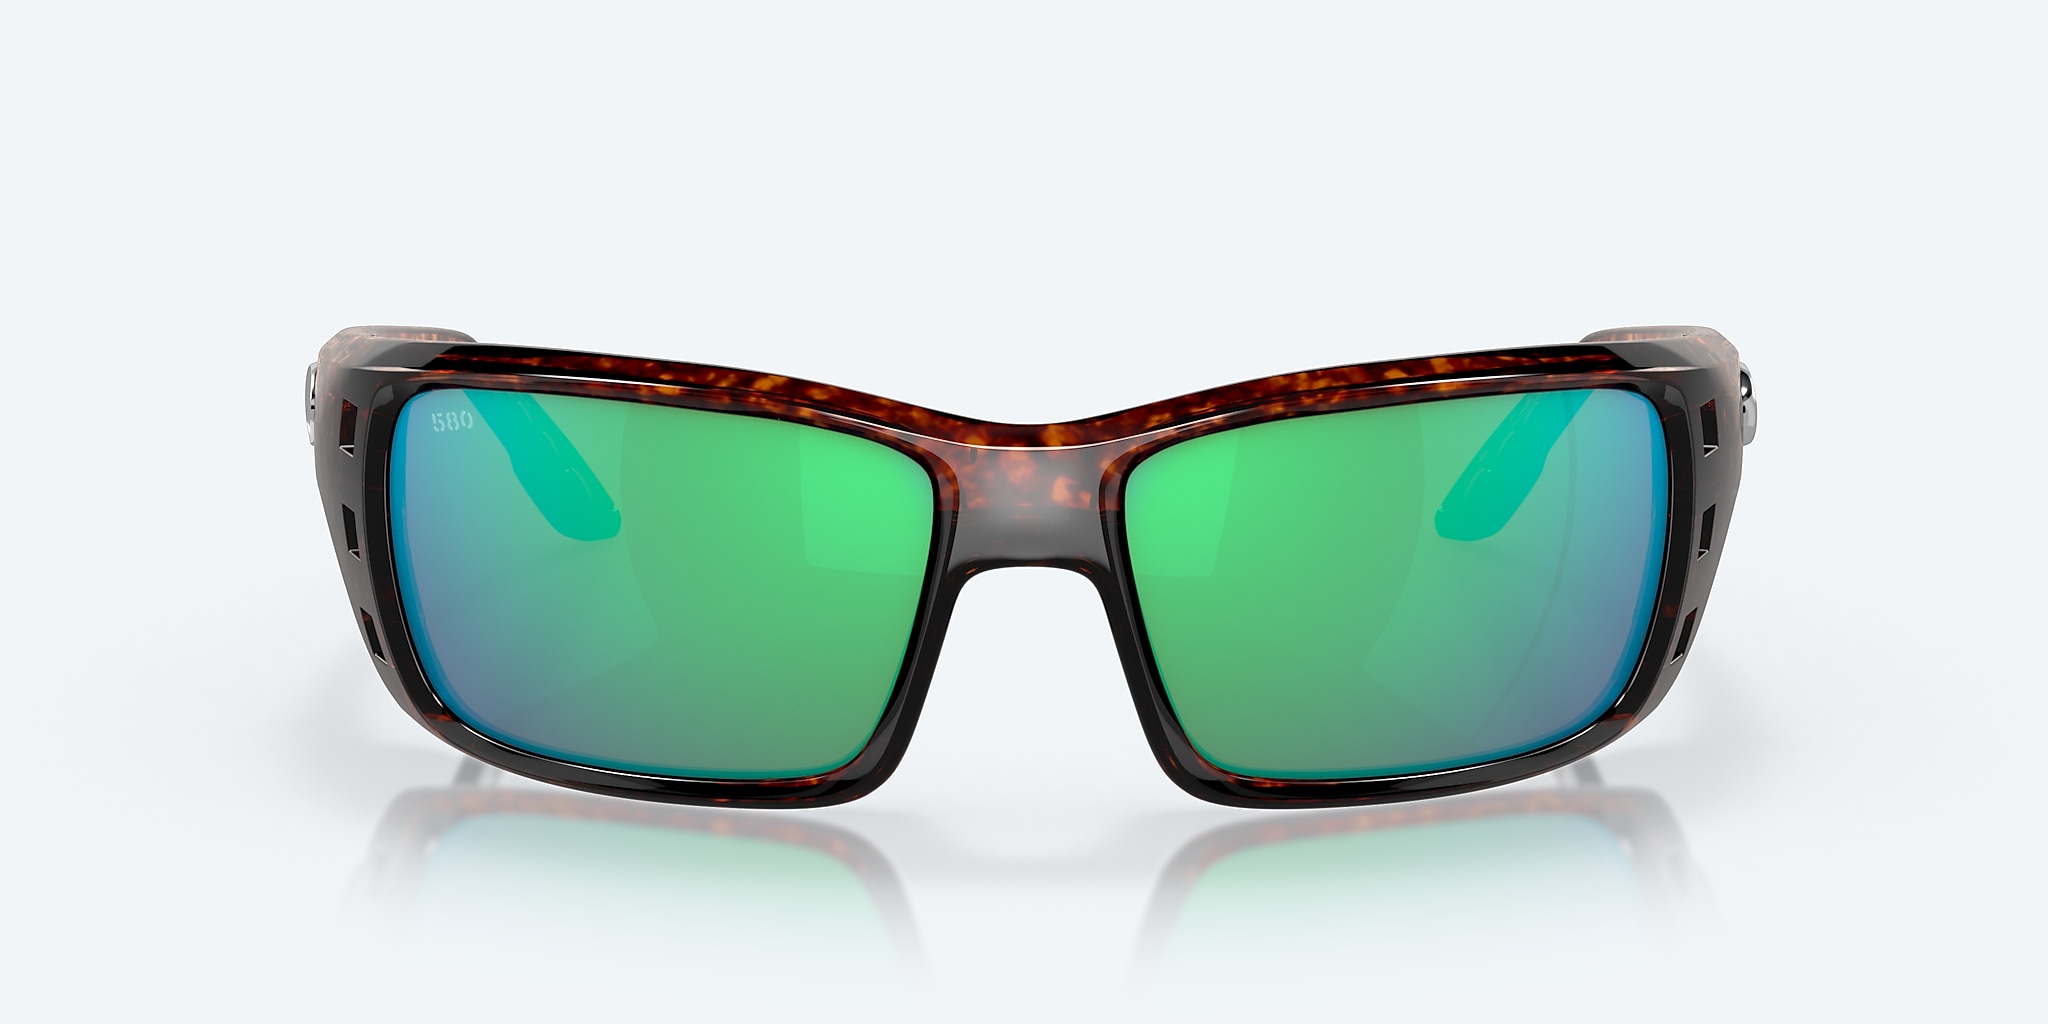 Costa Del Mar PERMIT 62.6 mm Tortoise Sunglasses